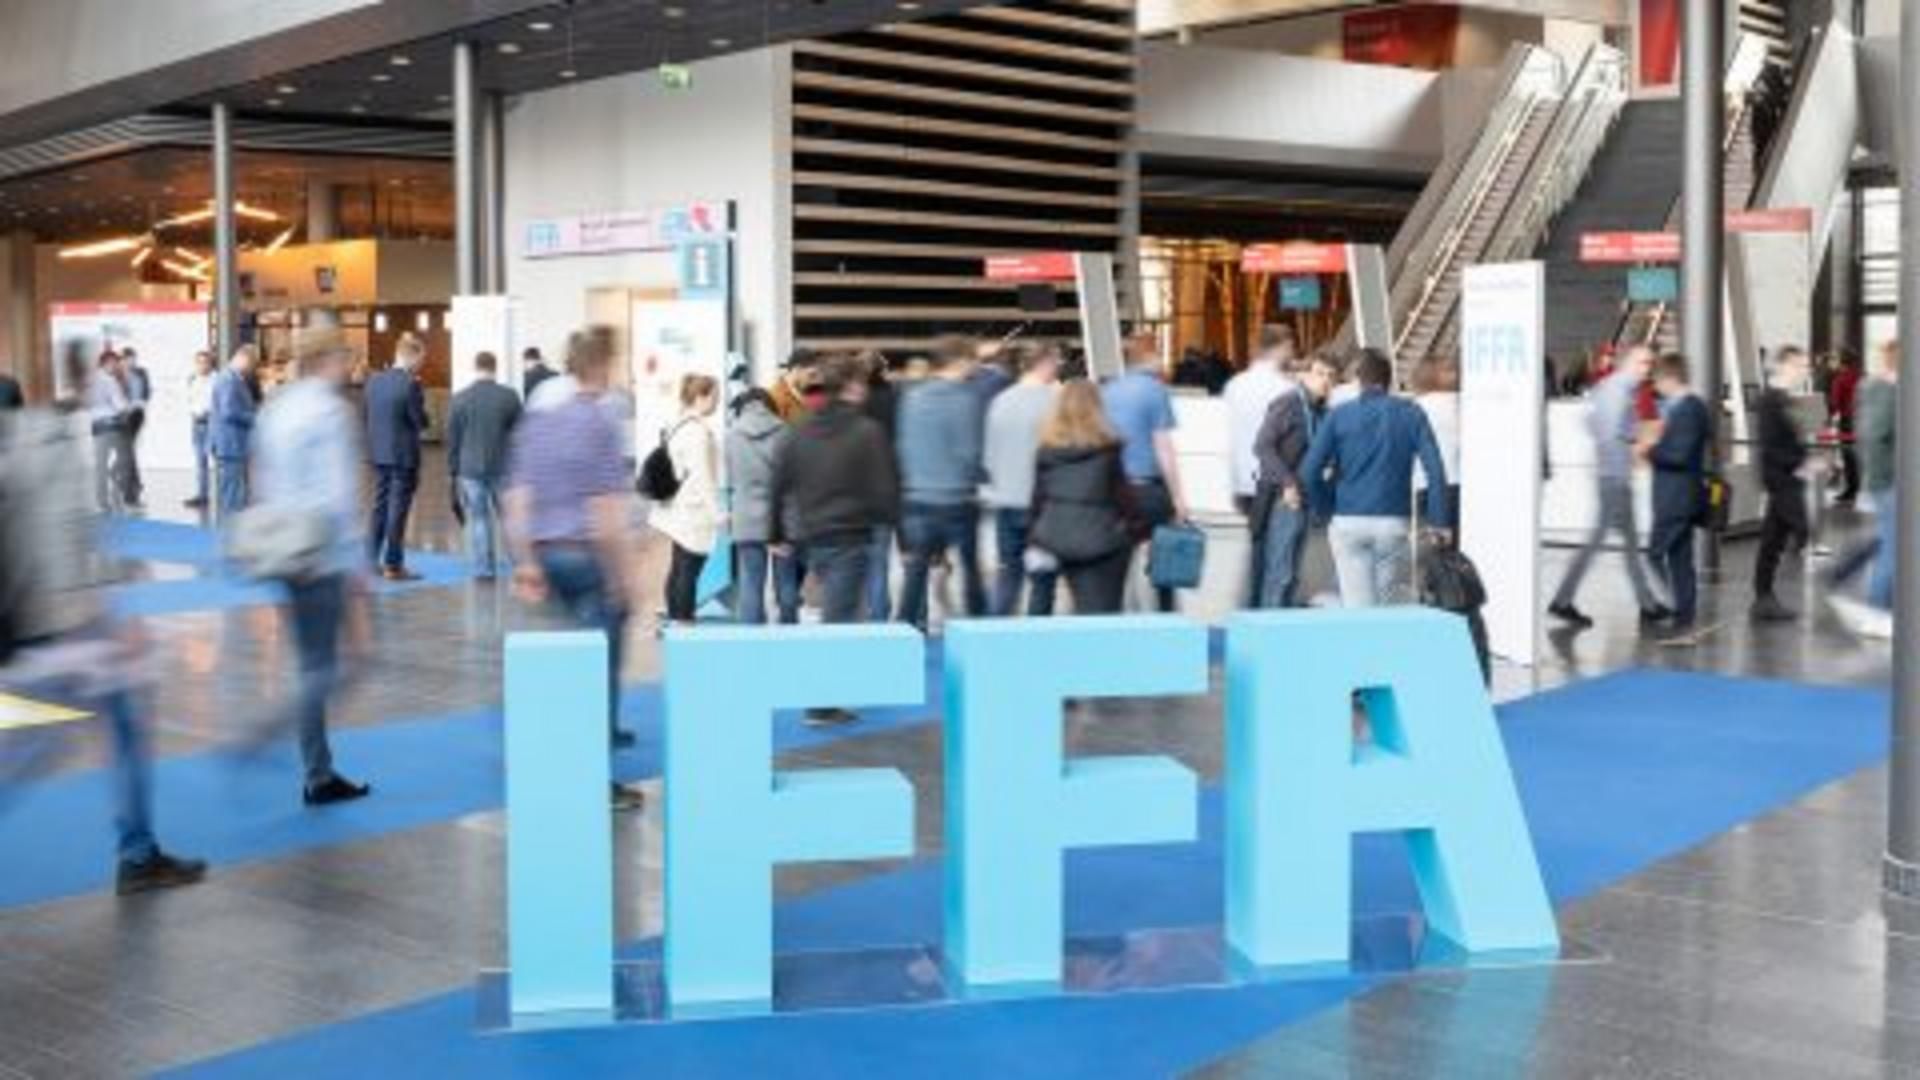 Concluye IFFA, celebrada en Frankfurt, en la cual Belca estuvo presente